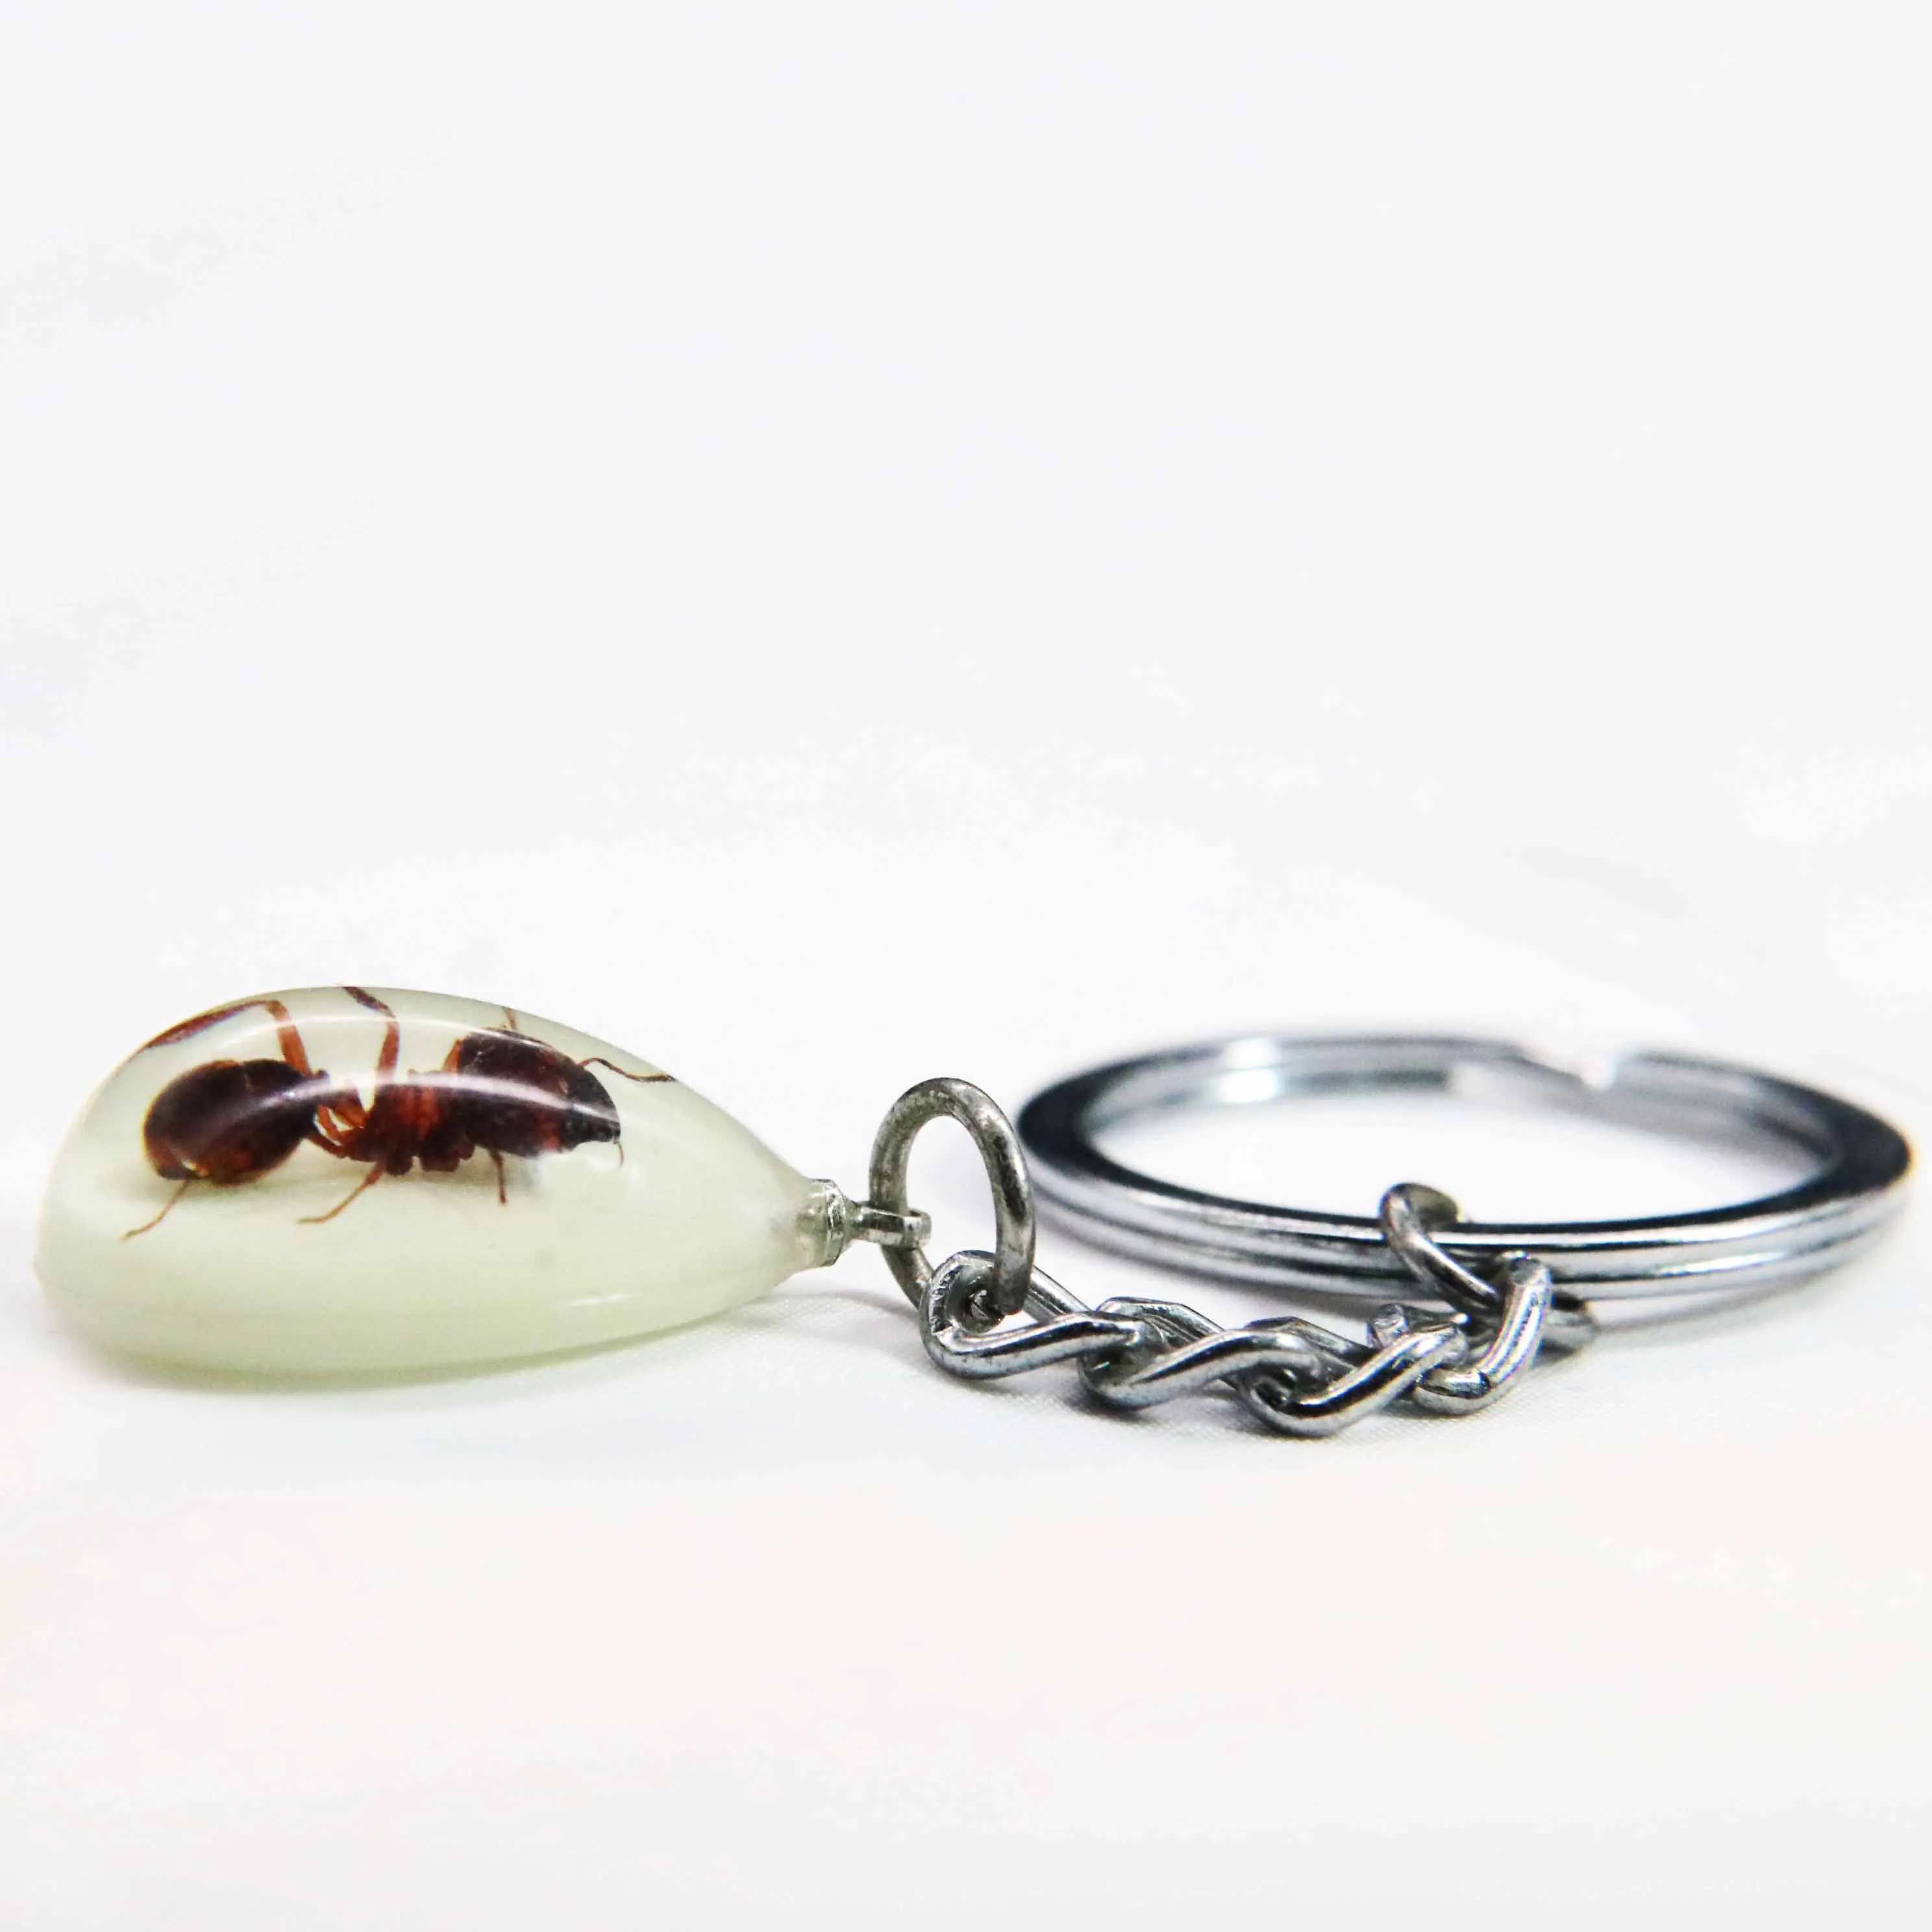 Мини насекомых капли воды реальный светится в темноте насекомых муравей искусство ювелирные кольца для ключей сумка Шарм Llaveros Para Hombre индивидуальный брелок IVR - Цвет: Ant-mini 1 pc